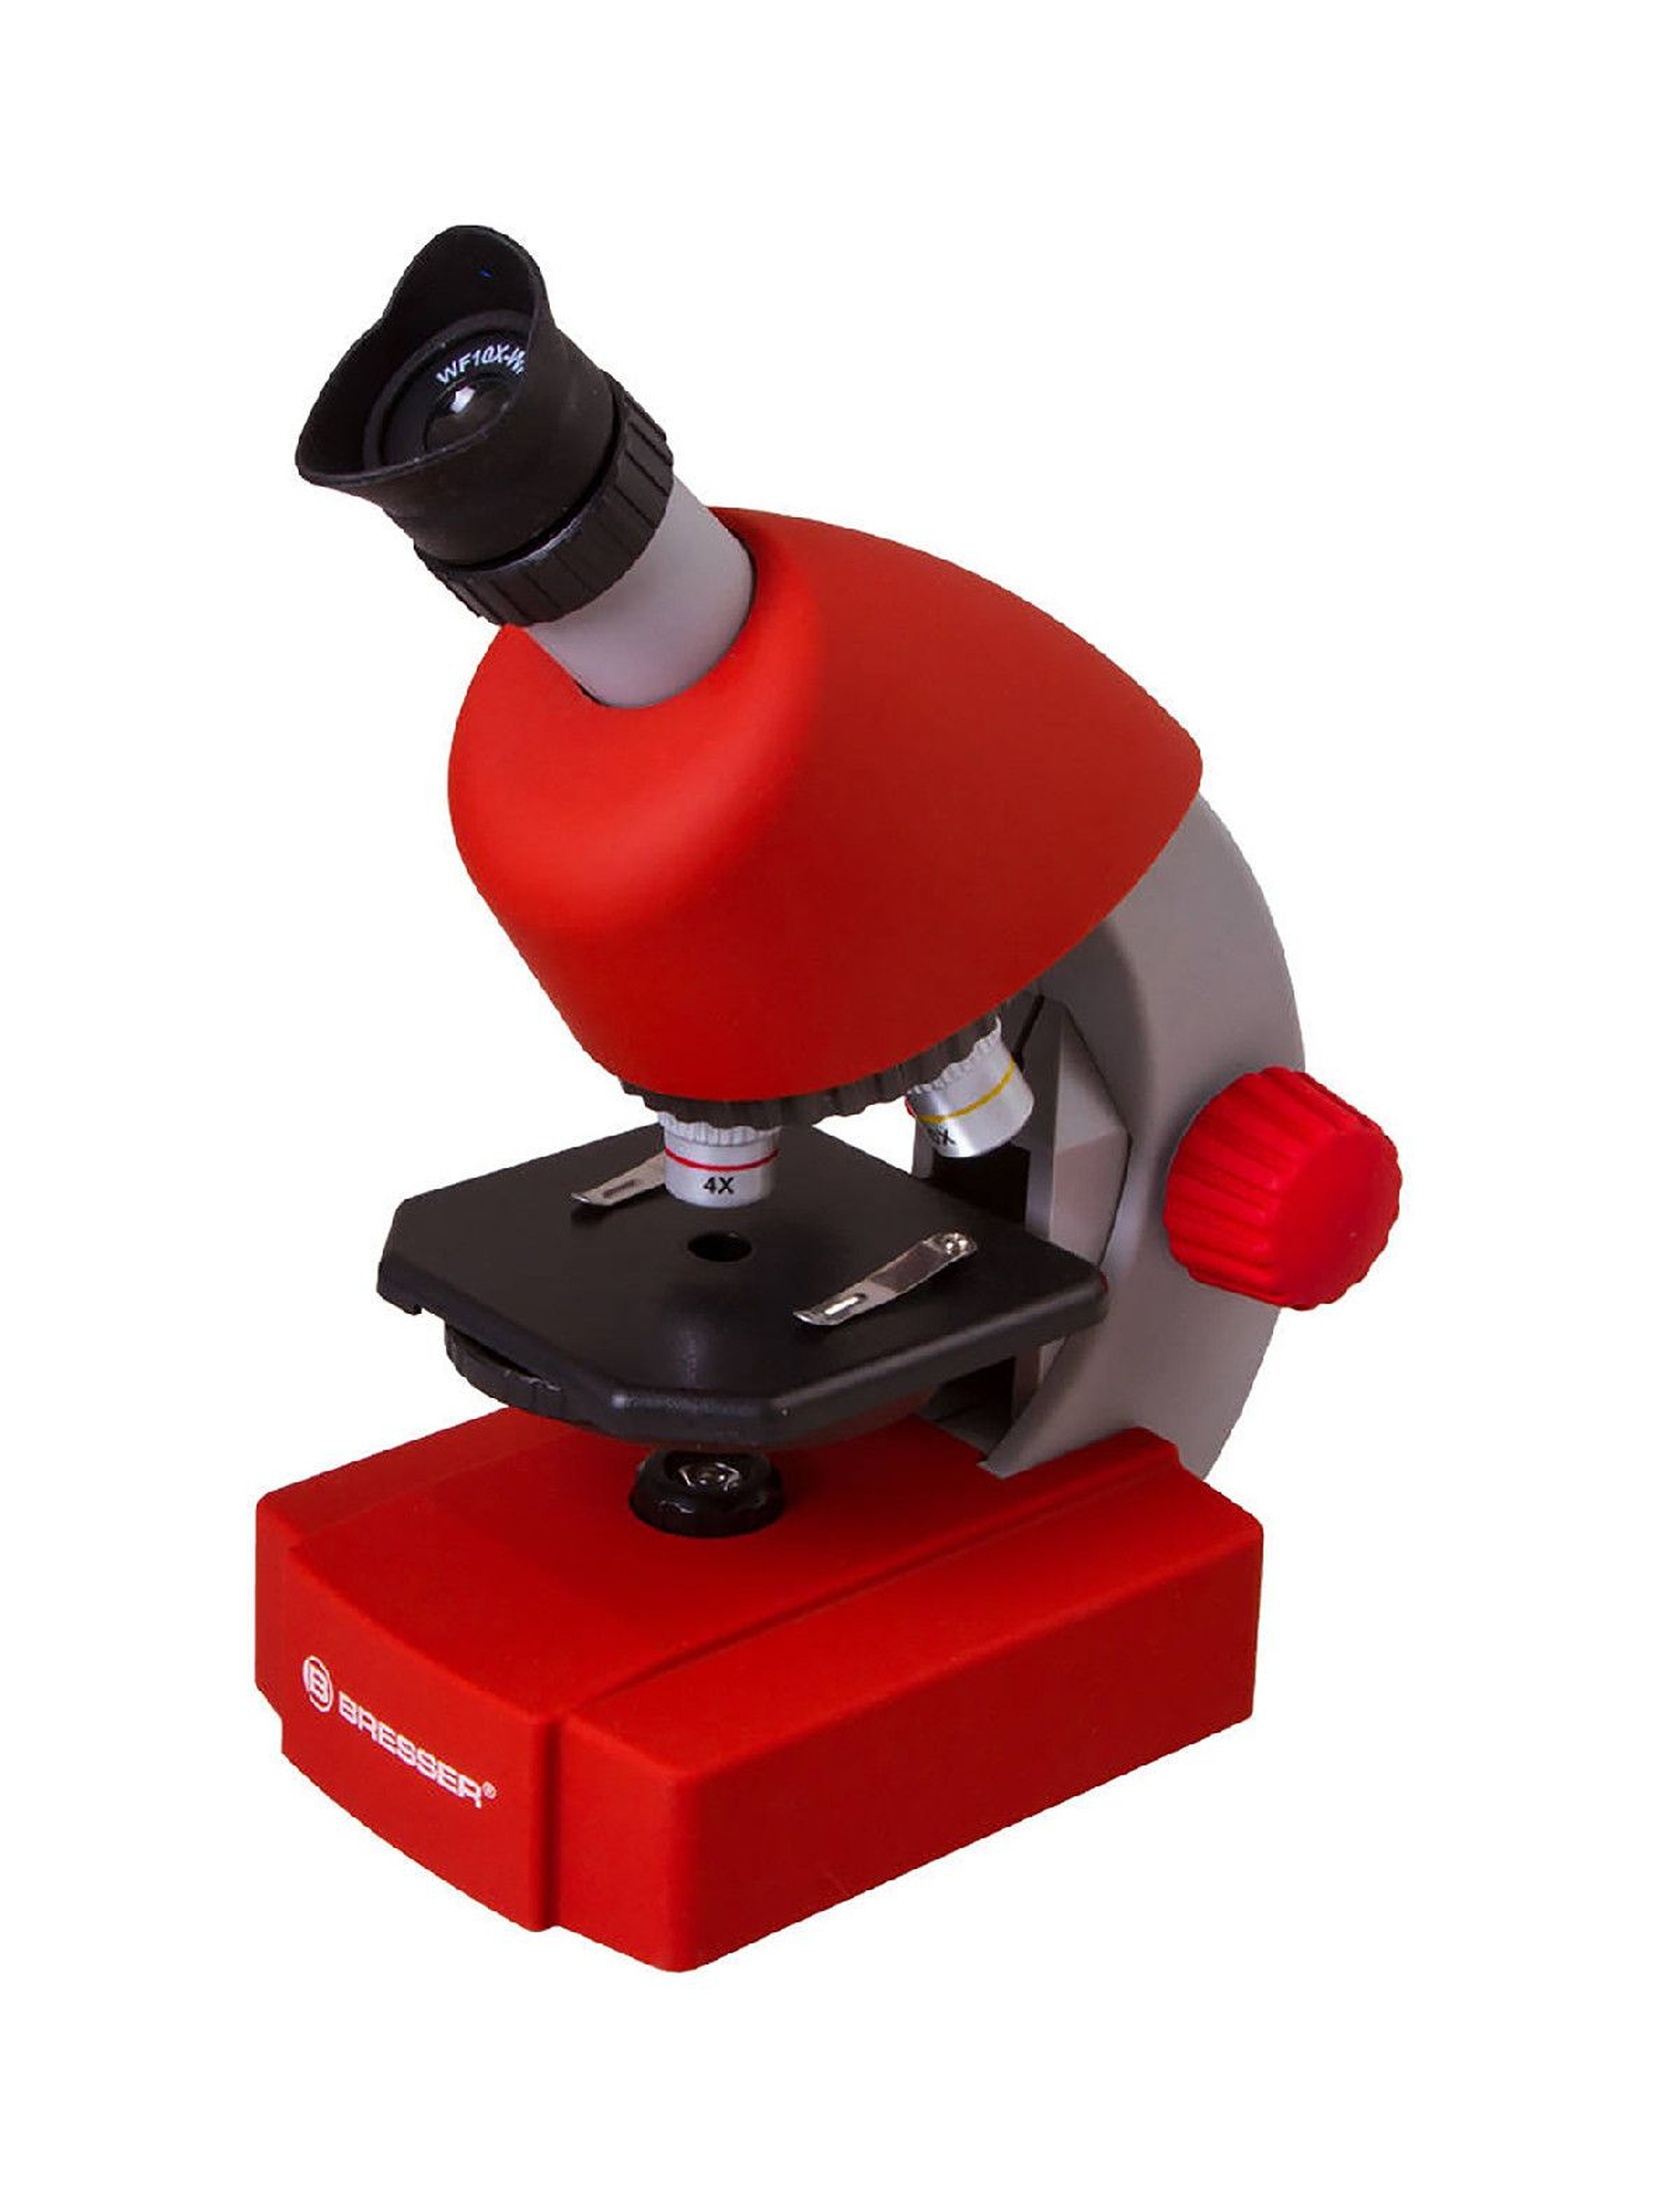 Mikroskop dla dzieci Bresser Junior - czerwony